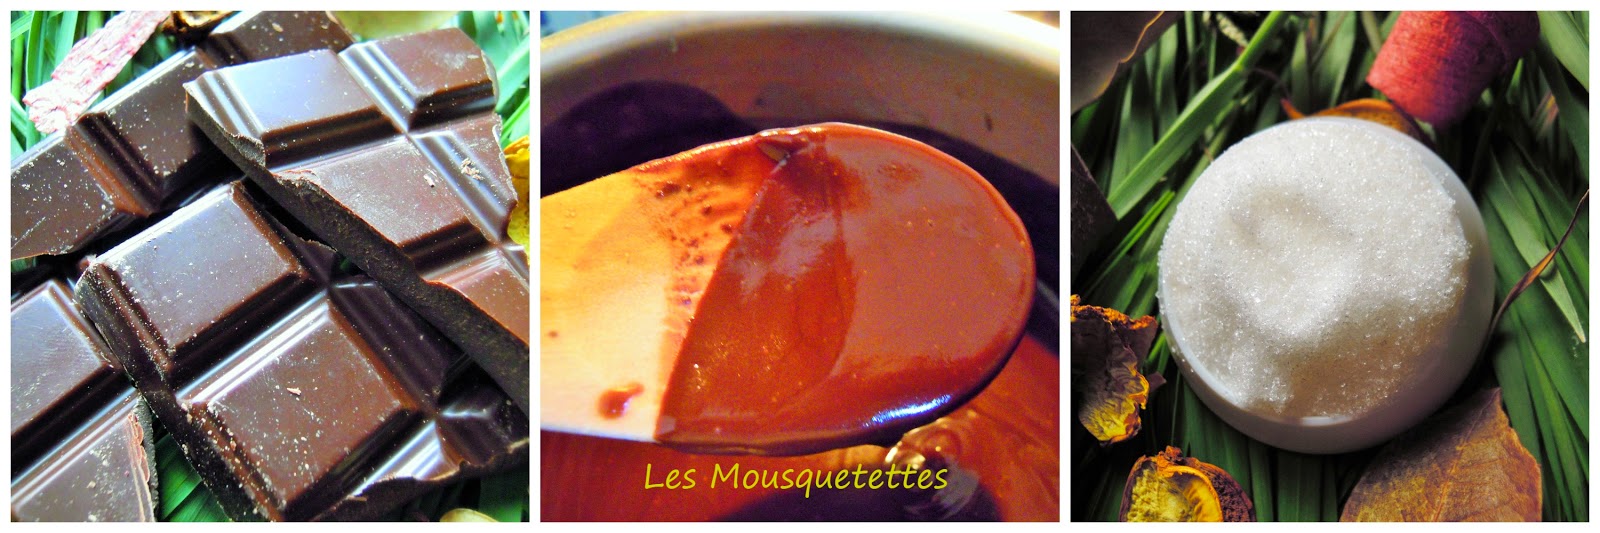 DIY Masque chocolat Pâques 2015 - Les Mousquetettes©